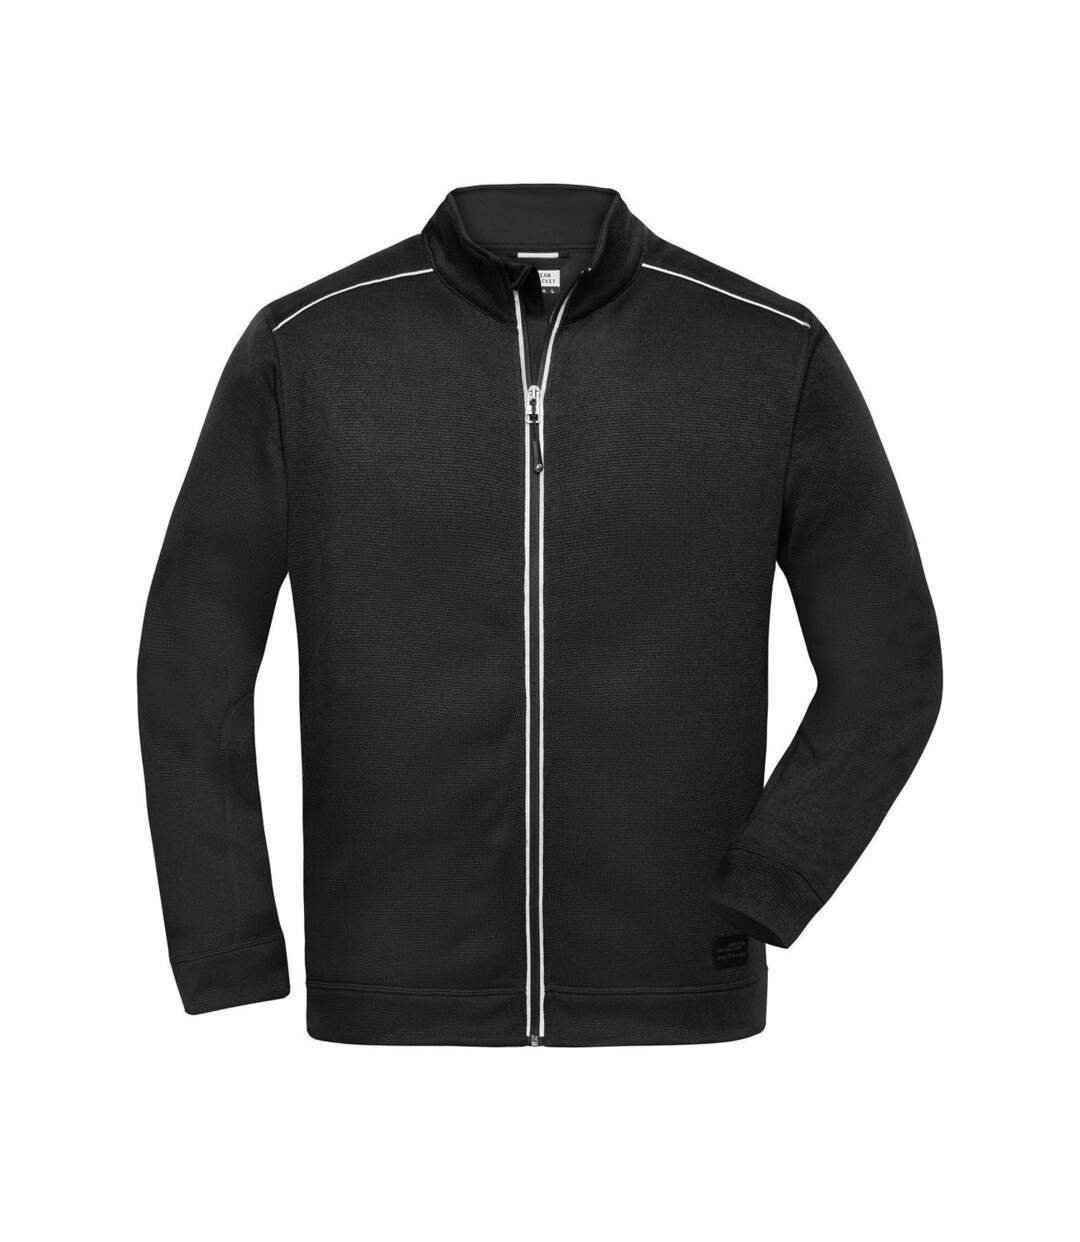 Veste zippée polaire workwear - homme - JN898 - noir